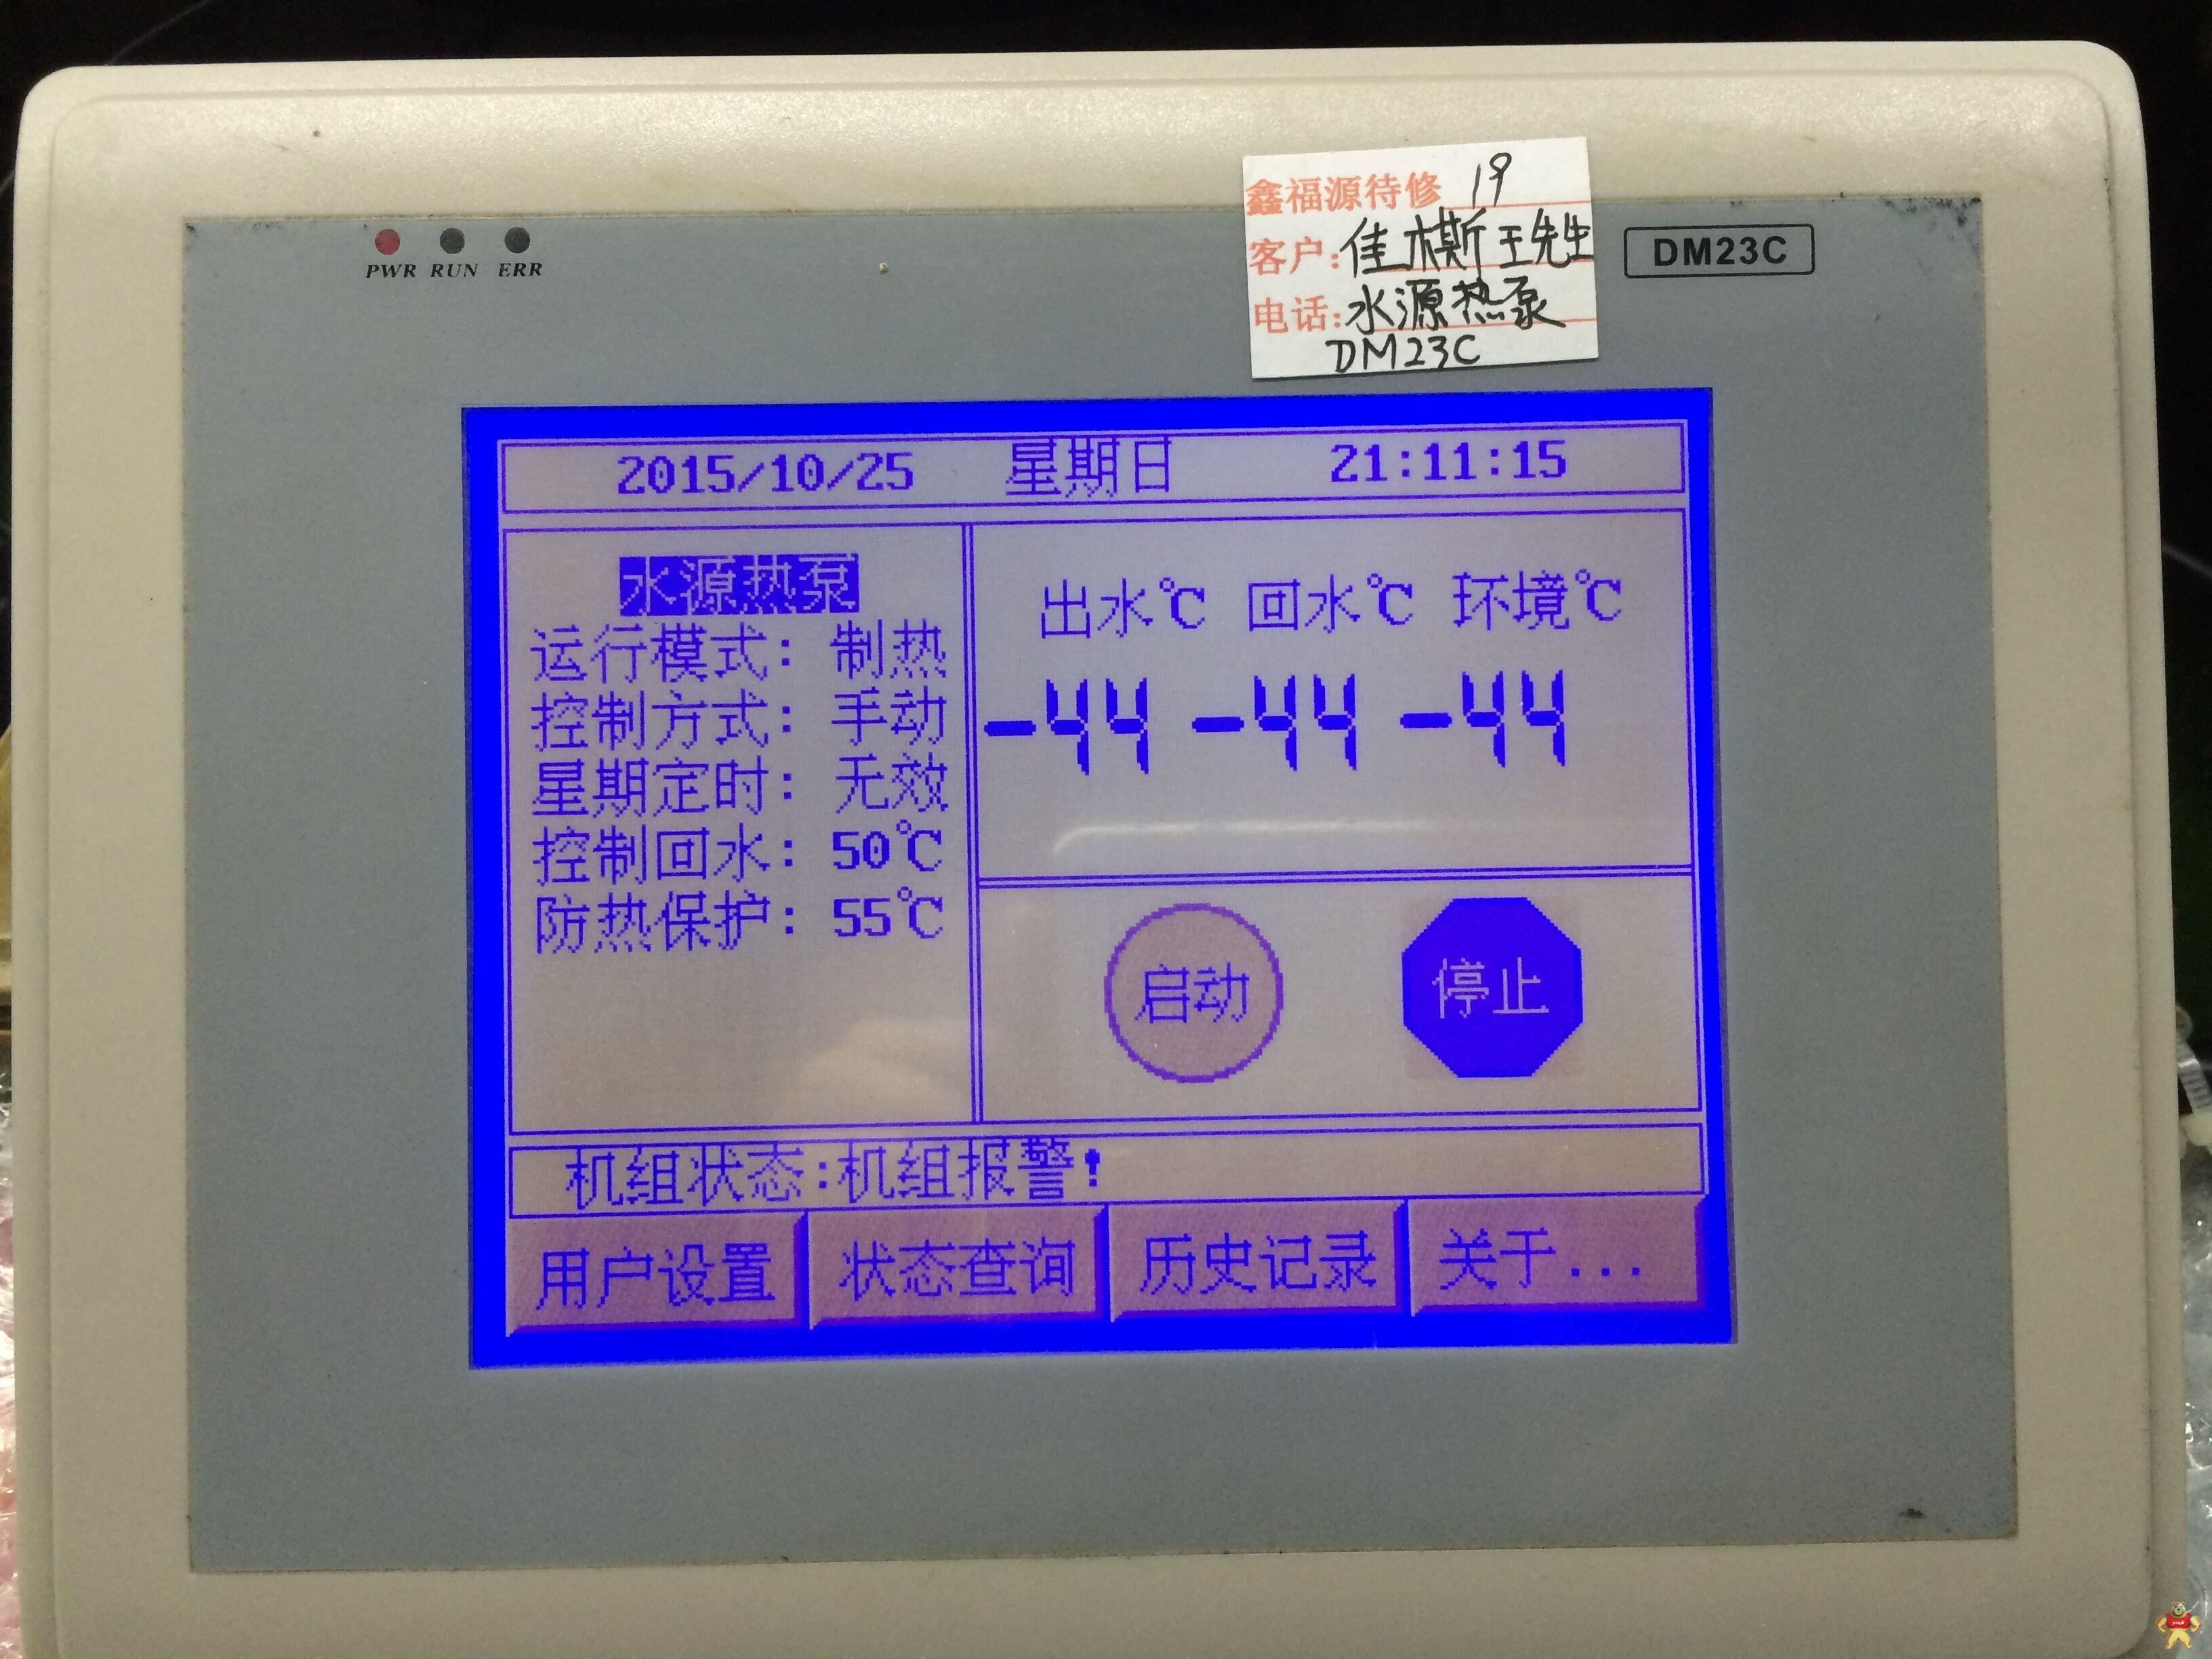 中央空调DM23C控制器屏幕显示“***期使用时间到”无法开机故障维修 水冷冷水,风冷冷水,风冷热泵,水源热泵,地源热泵